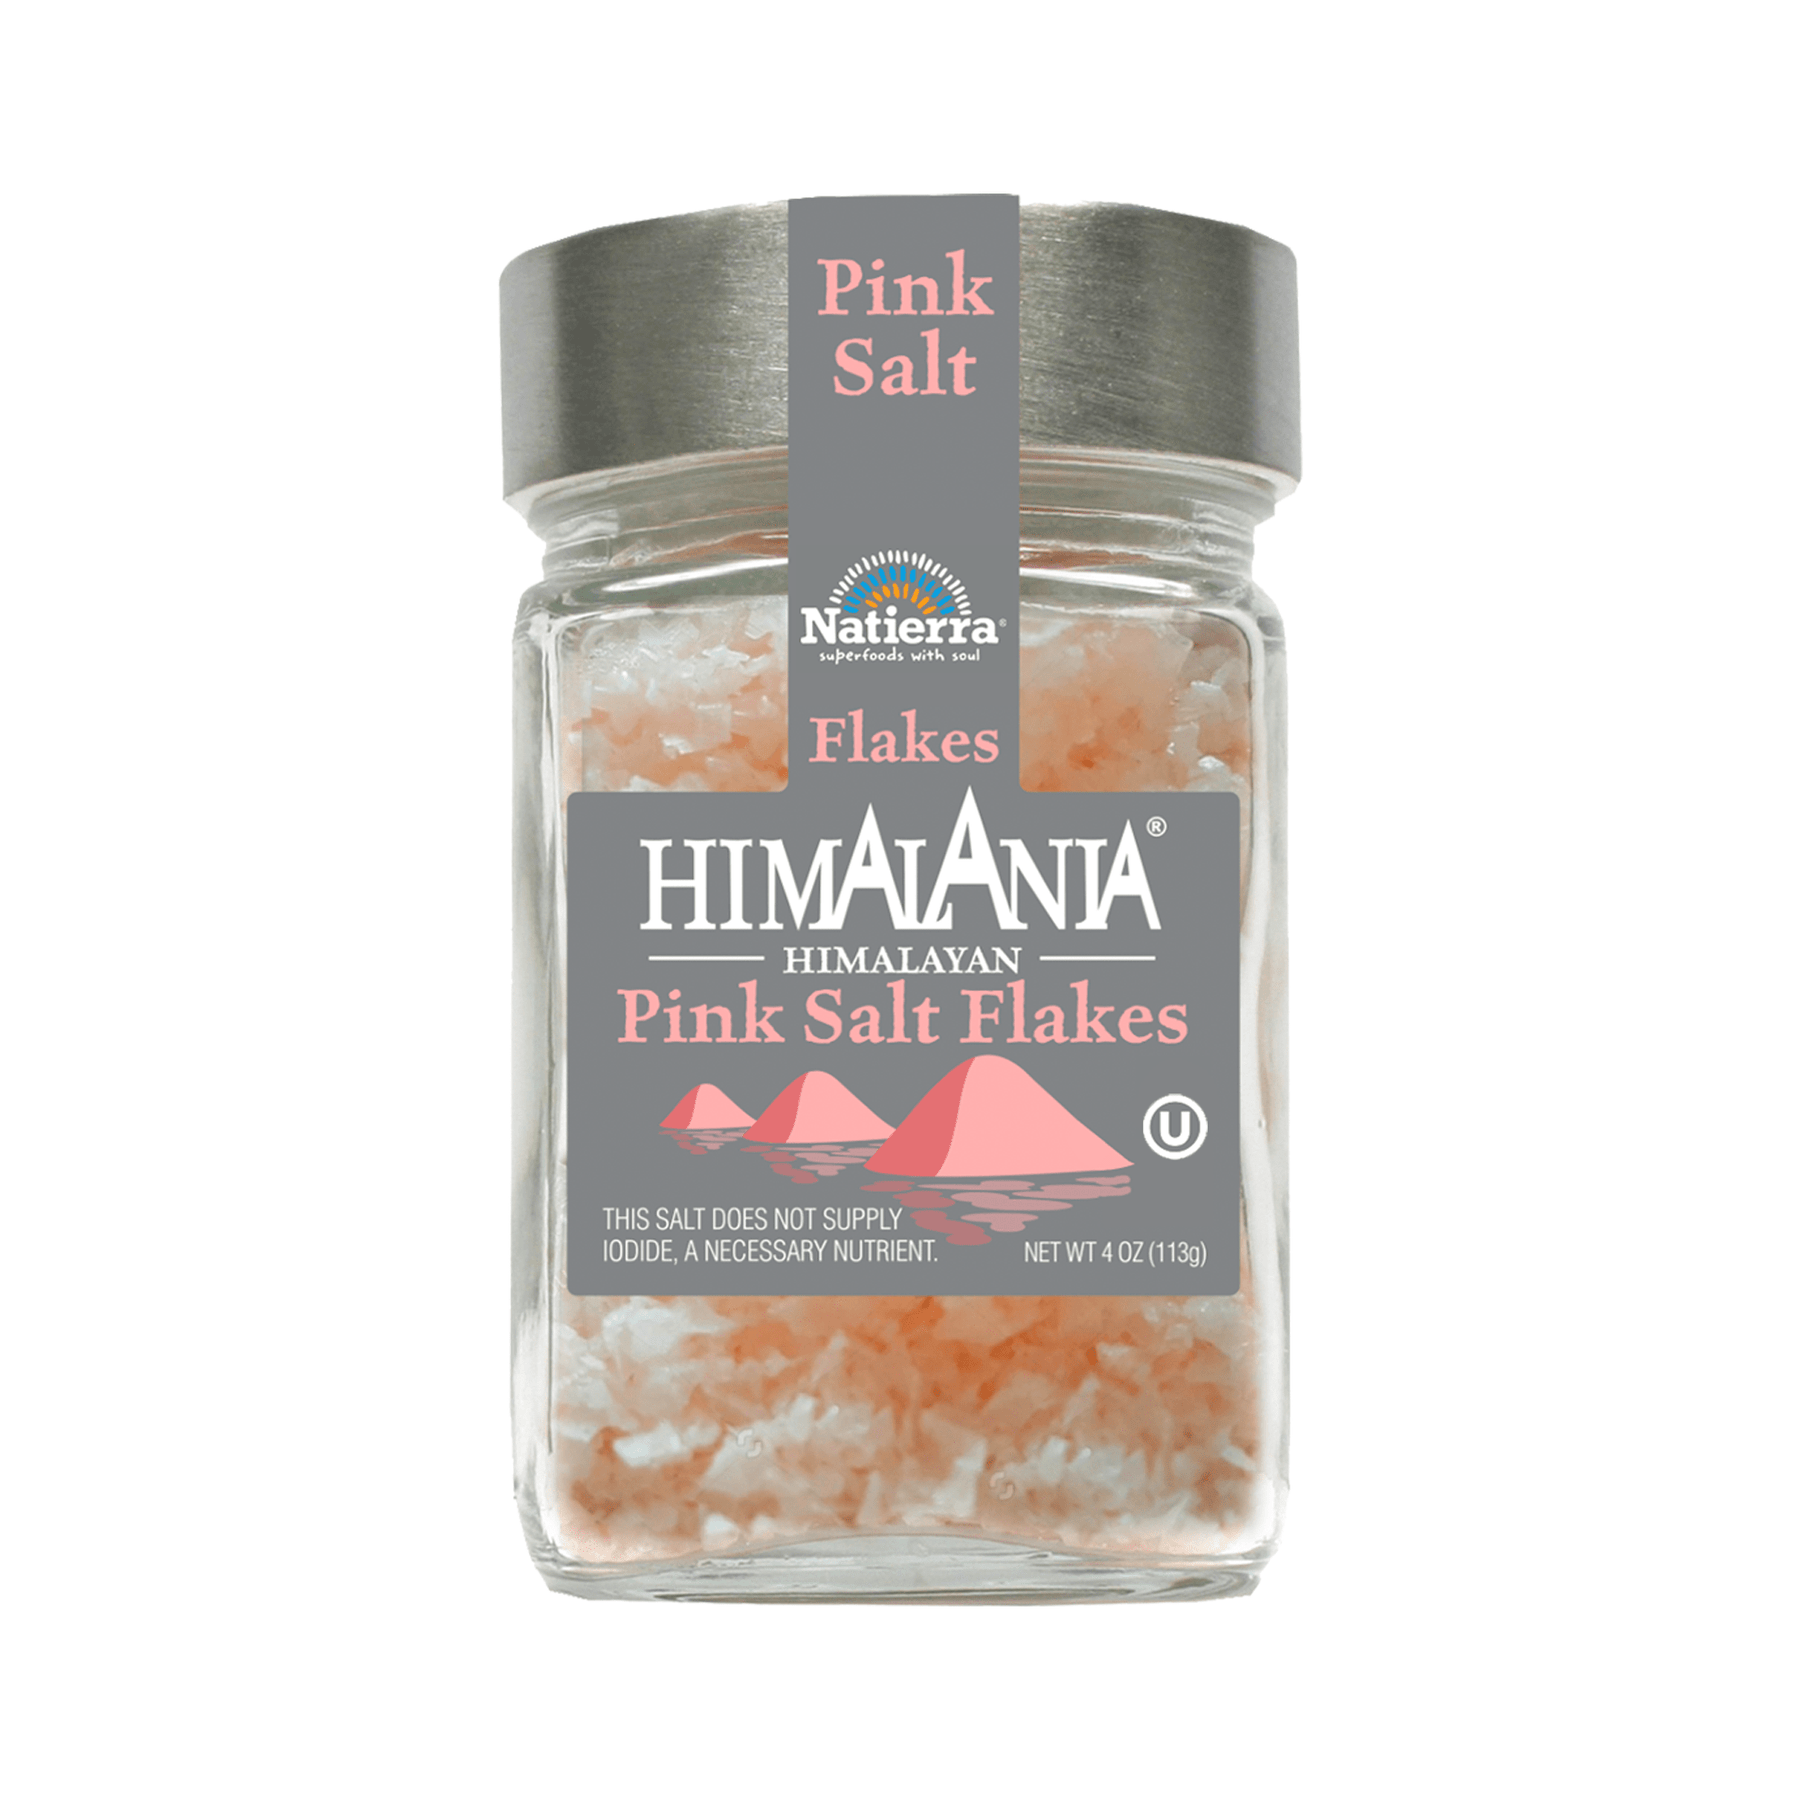 Natierra Himalania Pink Salt Flakes 4 oz jar 